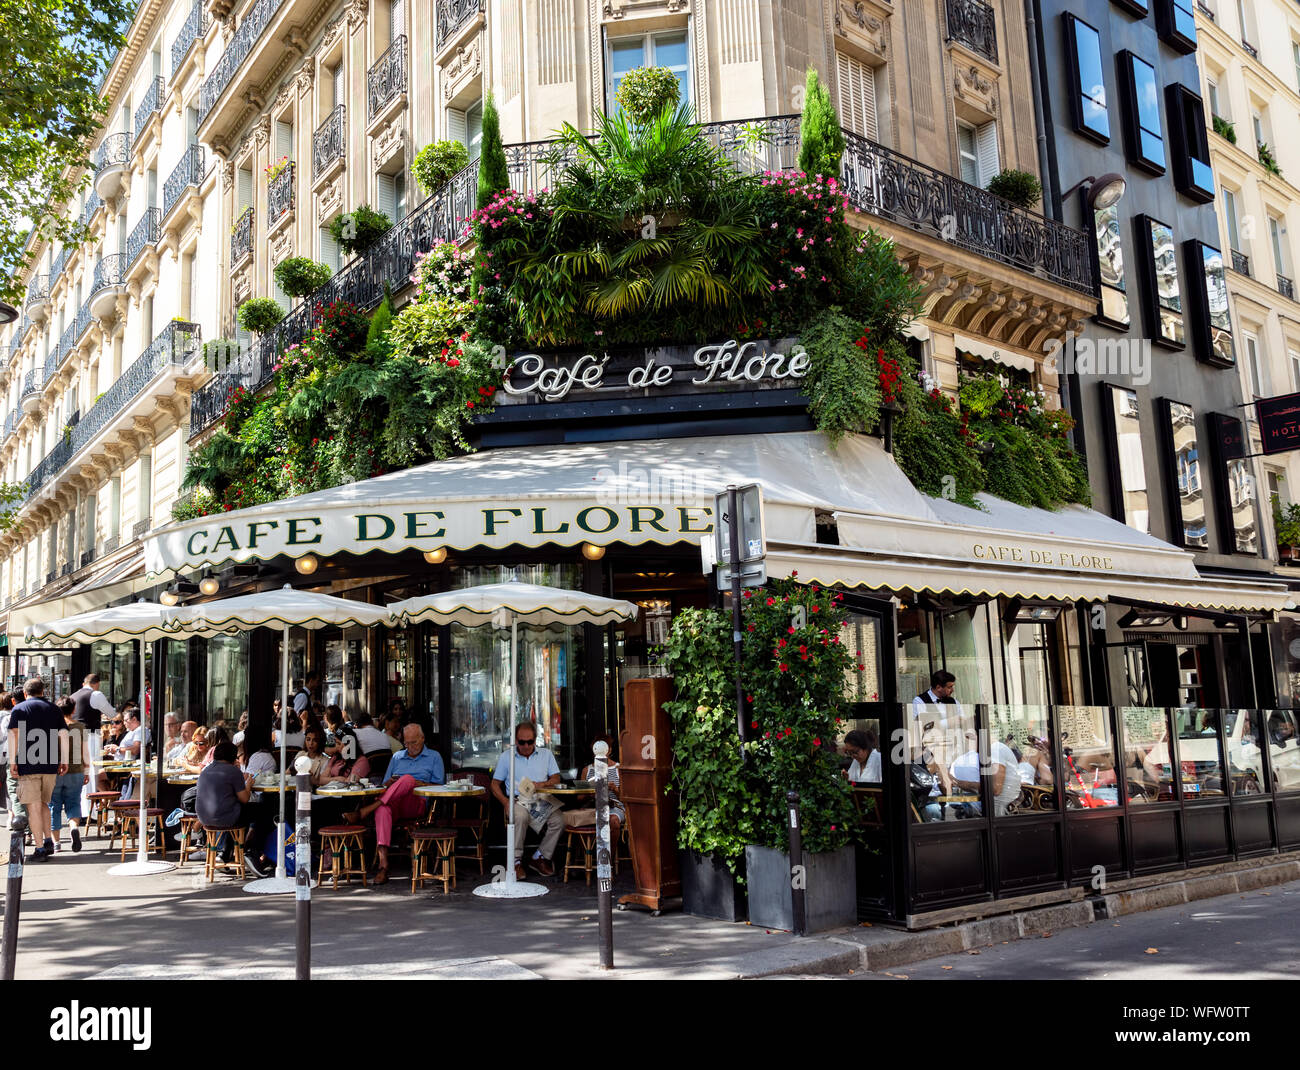 The Cafe De Flore in Paris Stock Photo